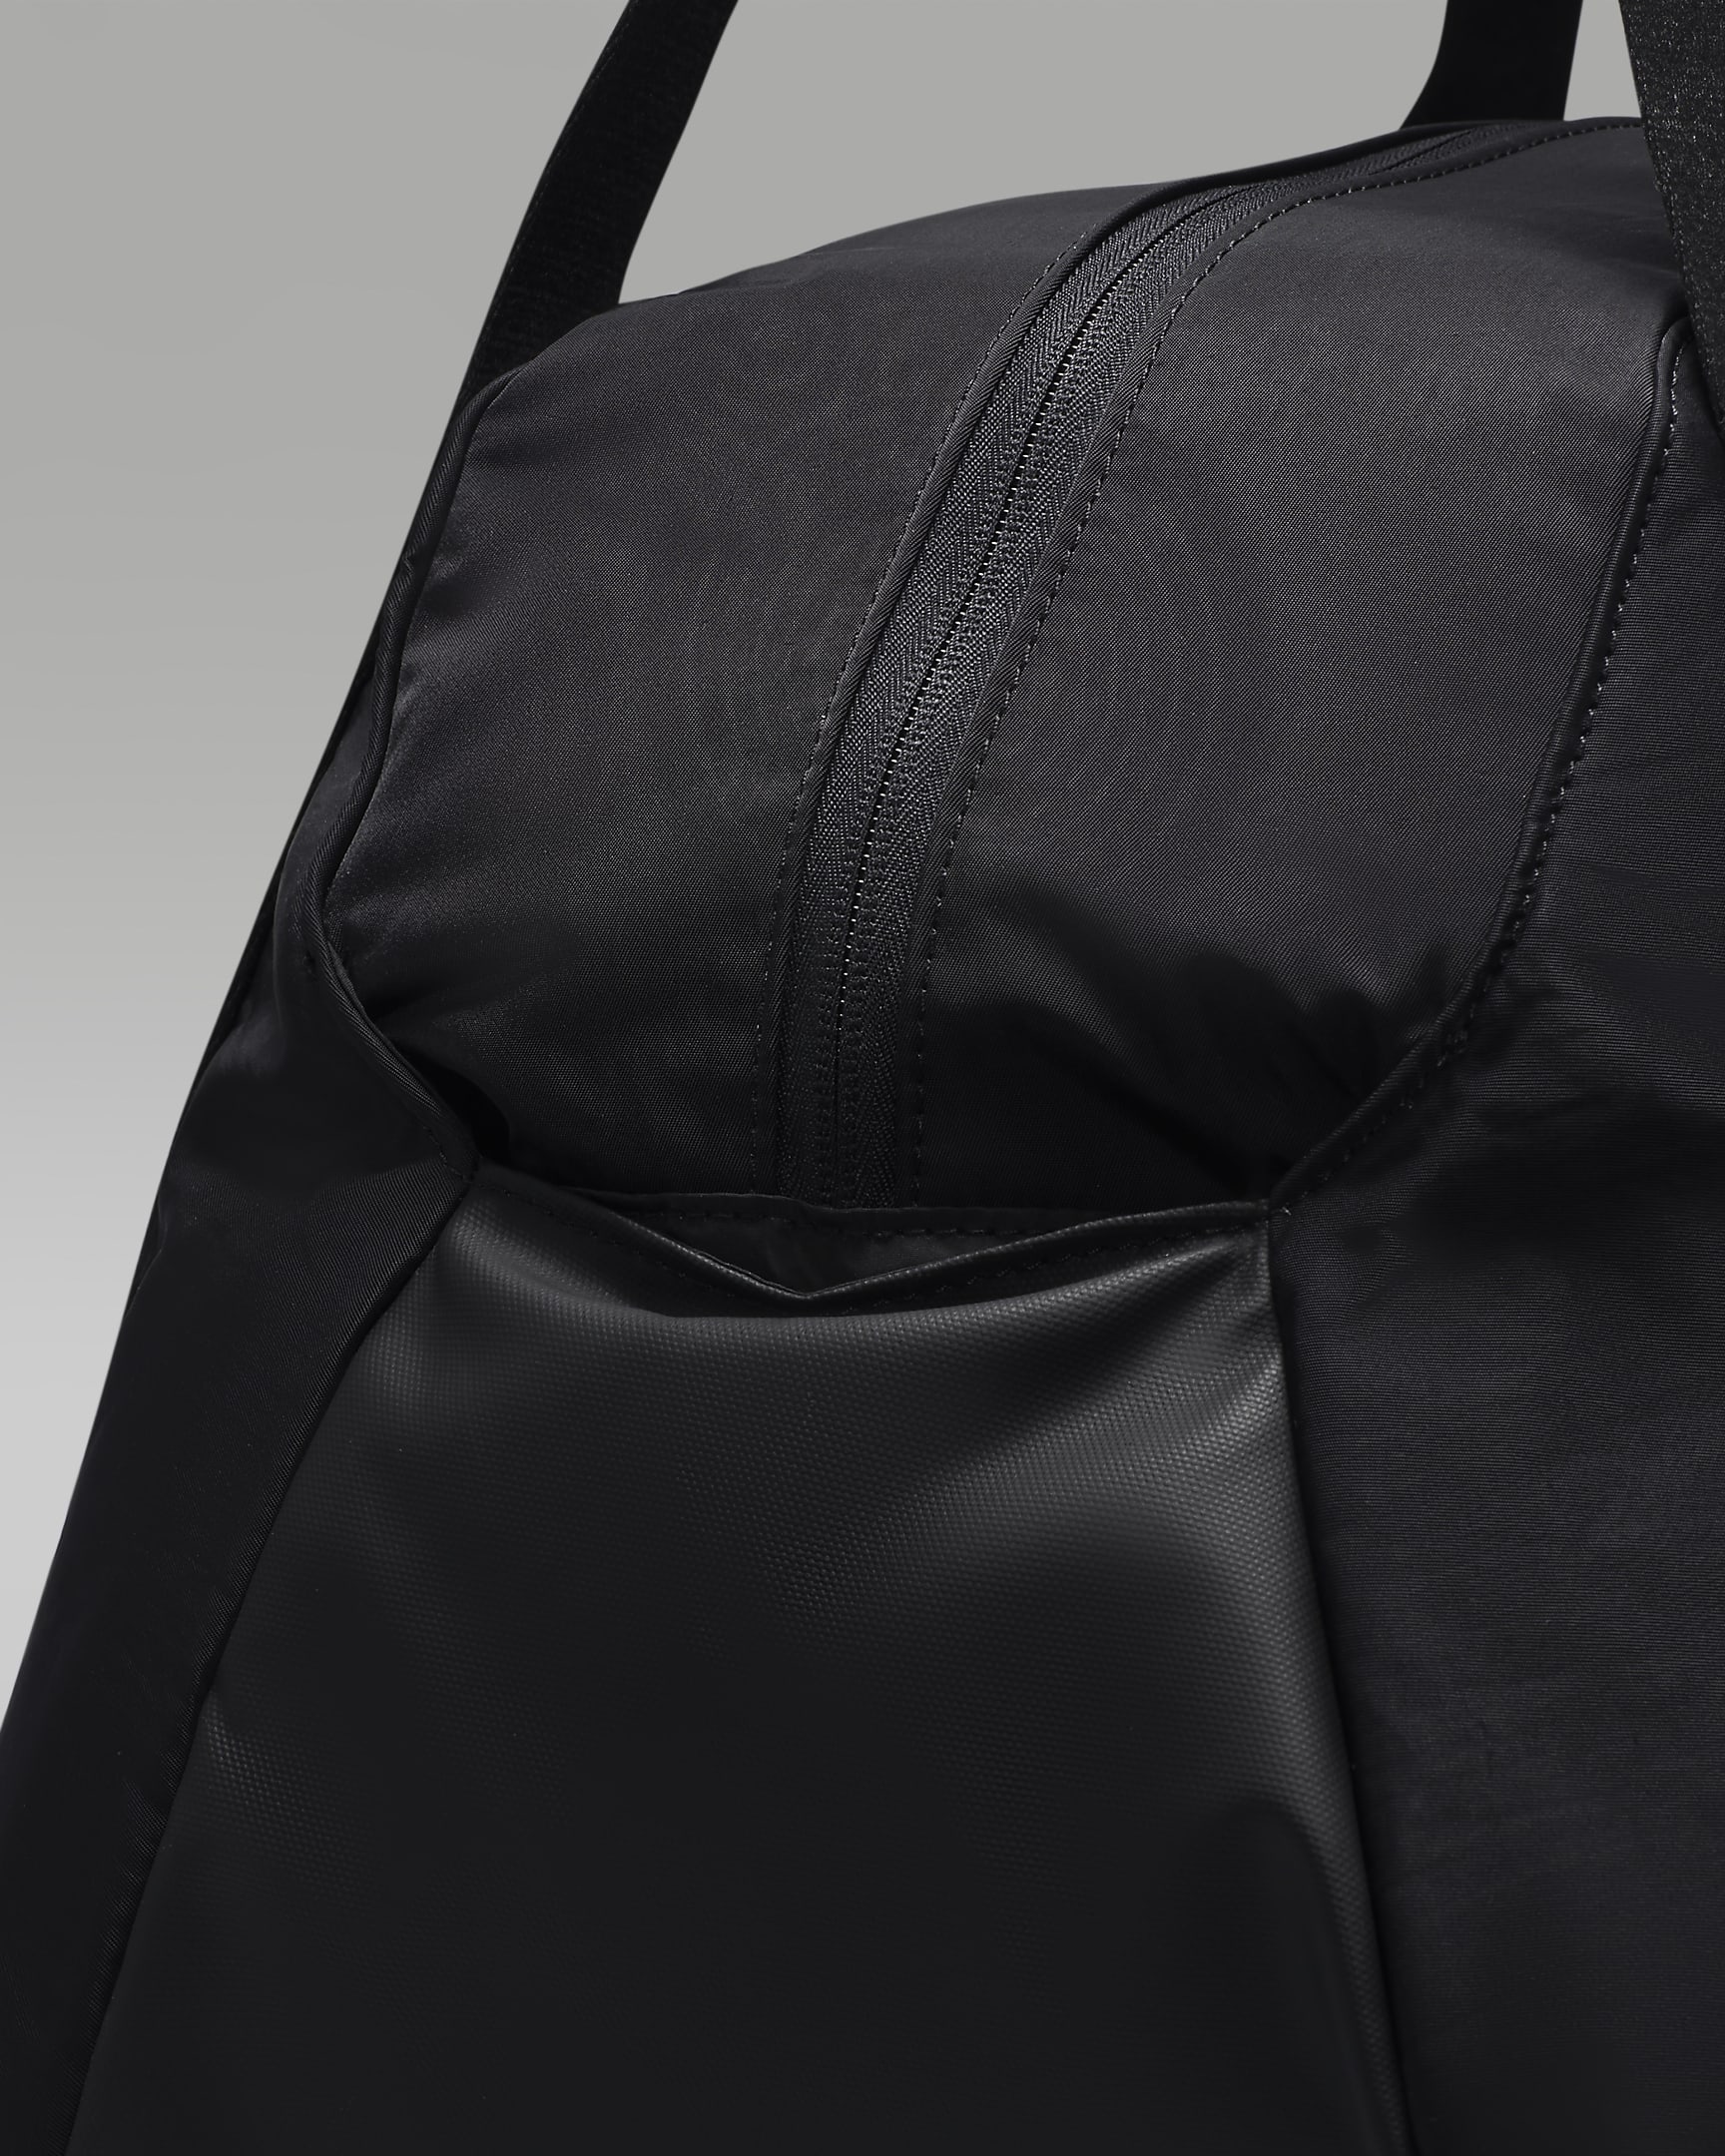 Jordan Alpha Duffle Bag (46.8L) - Black